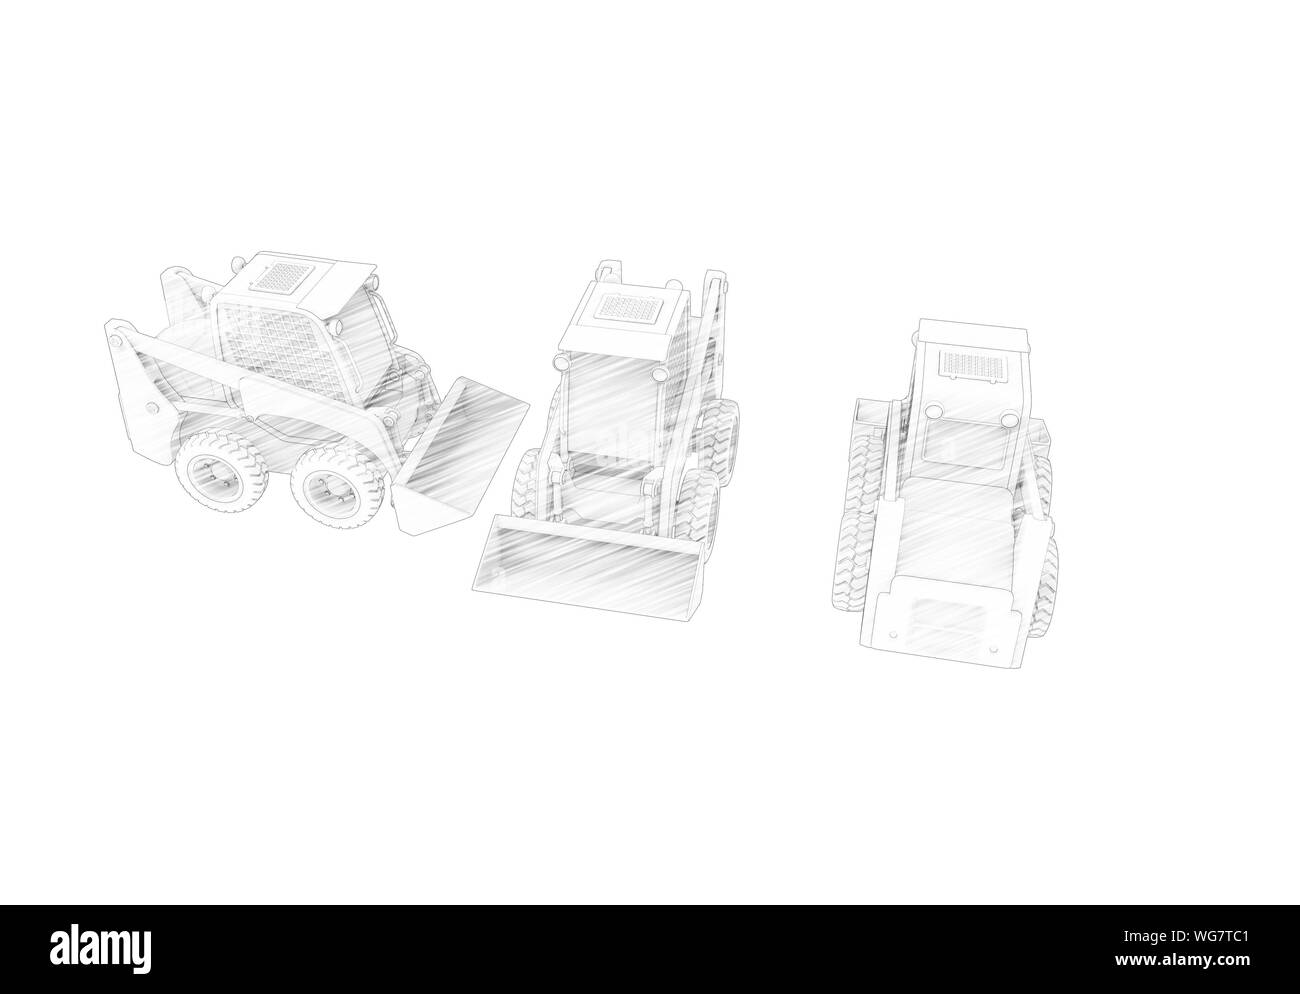 Le rendu 3D de plusieurs vues d'un petit studio d'excavateur isolé dans l'arrière-plan blanc Banque D'Images